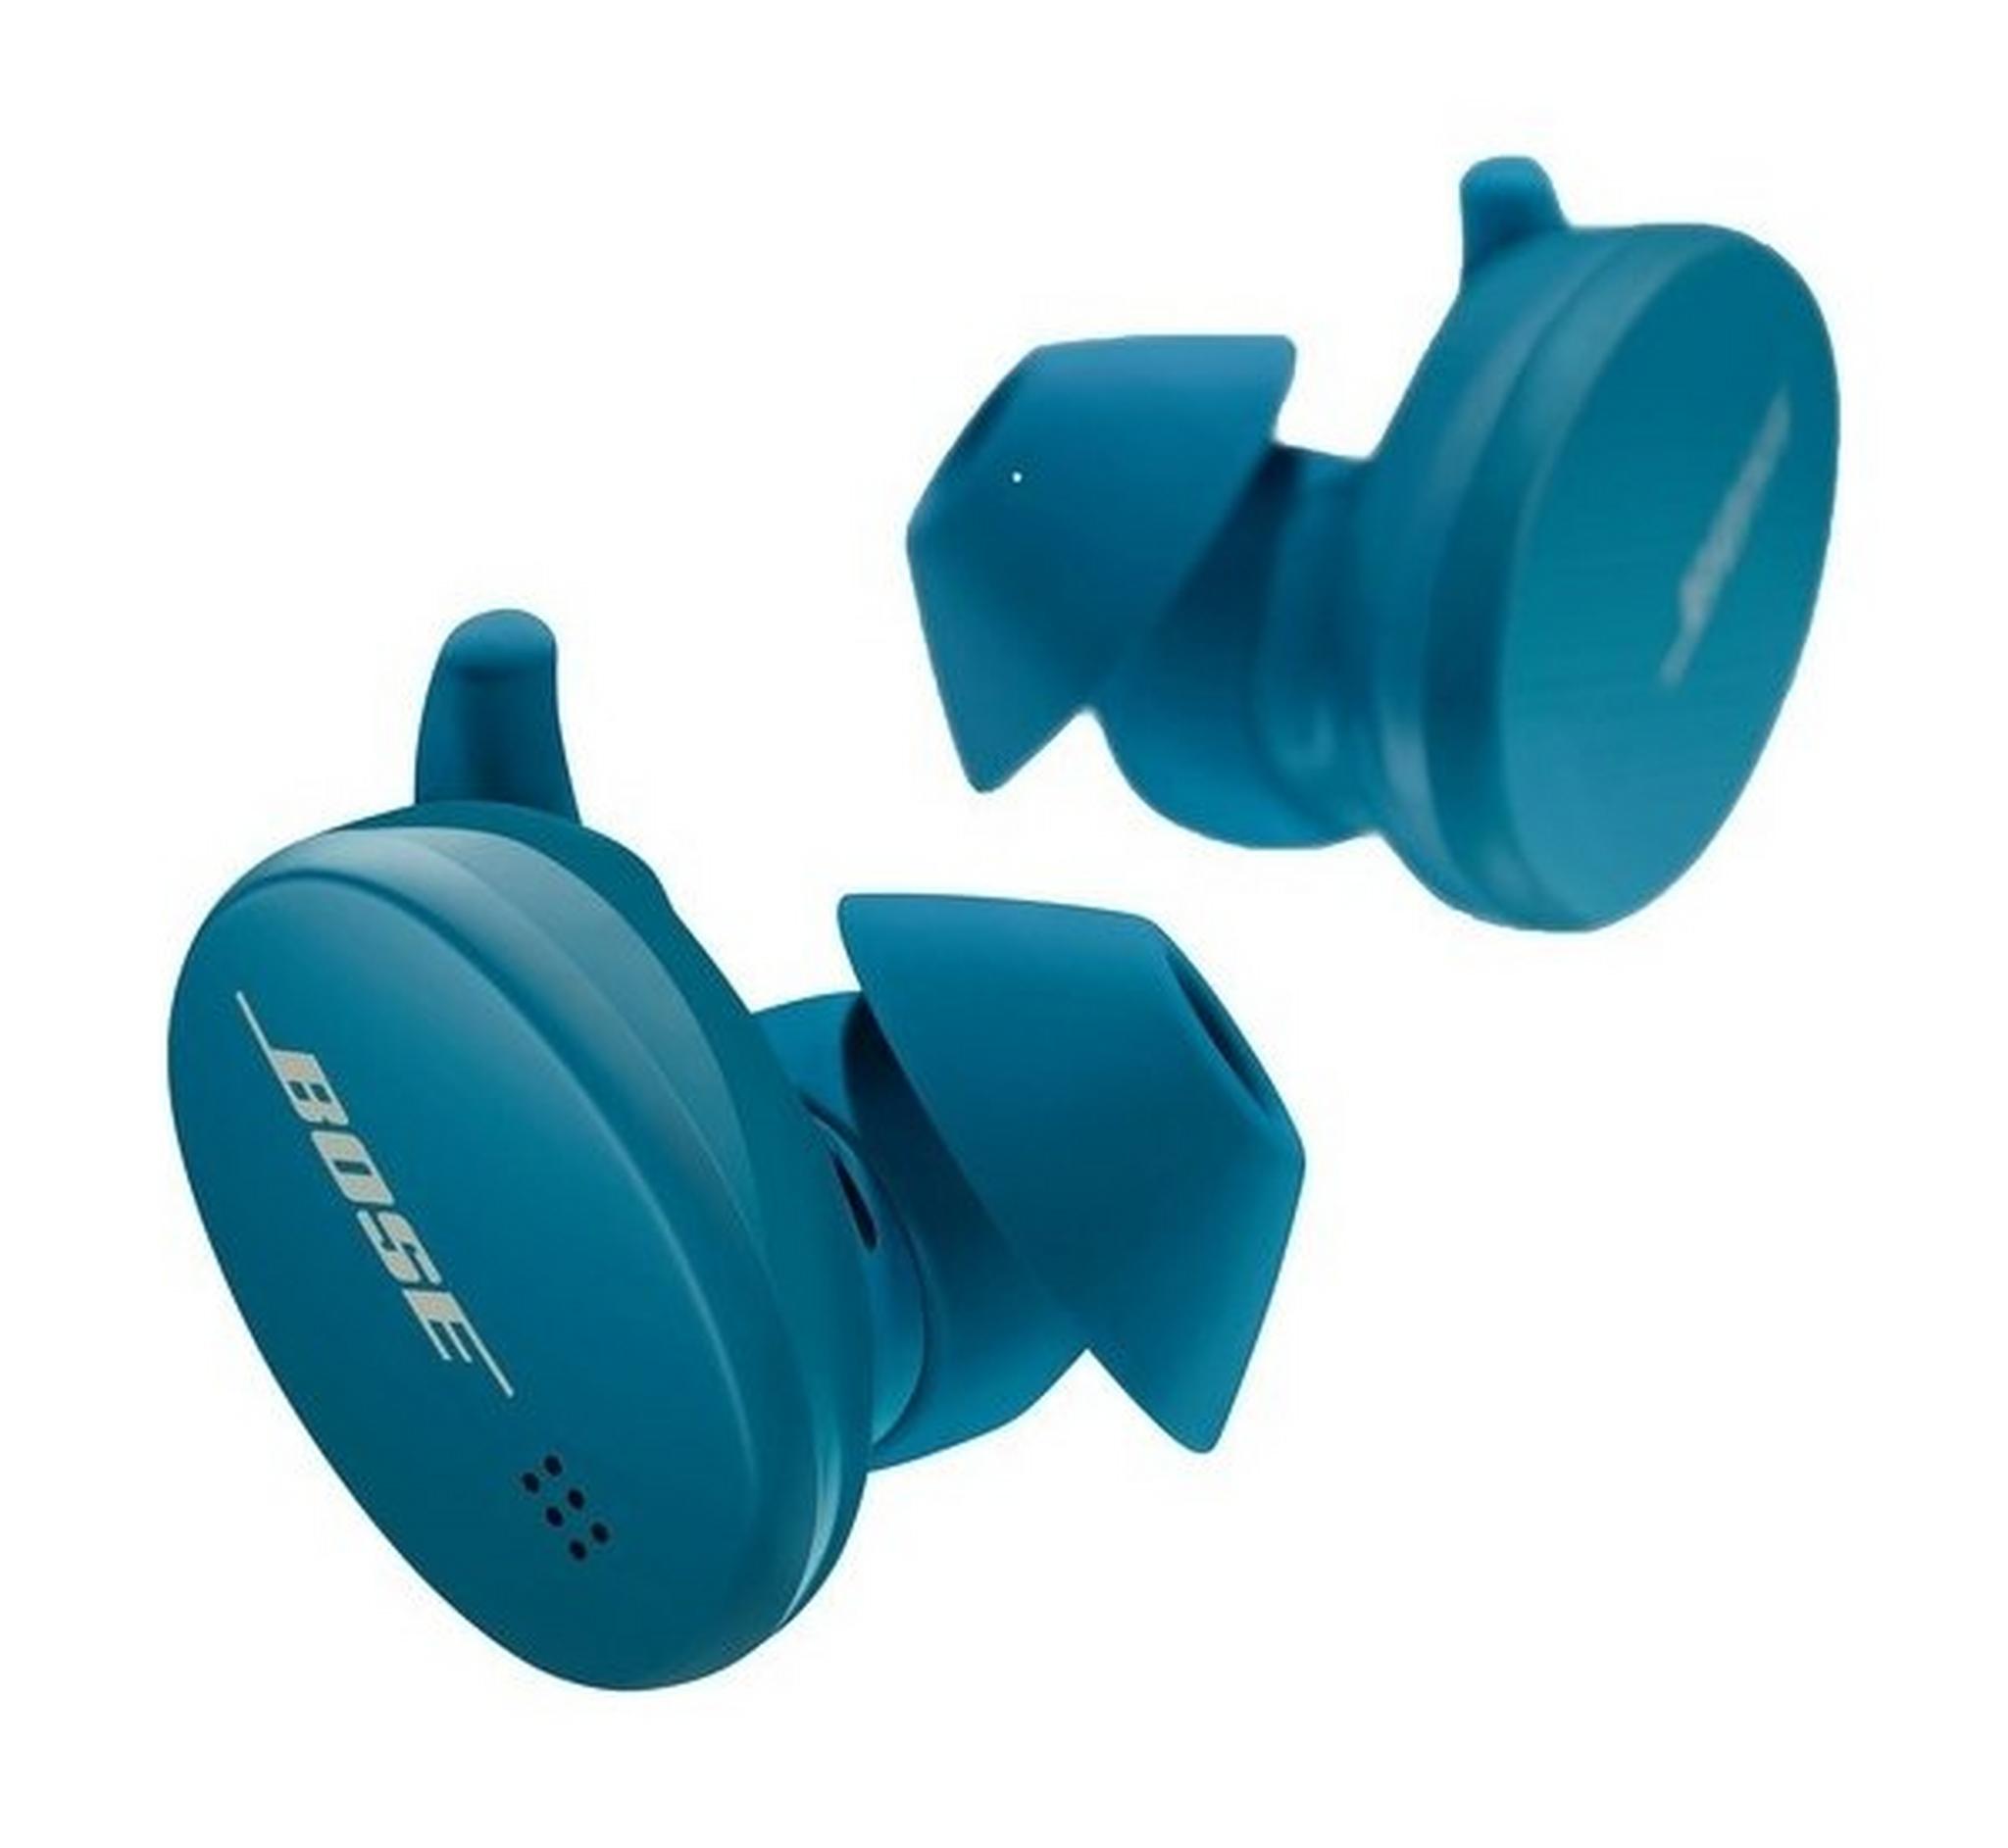 Bose Sport Wireless Earbuds - Baltic Blue